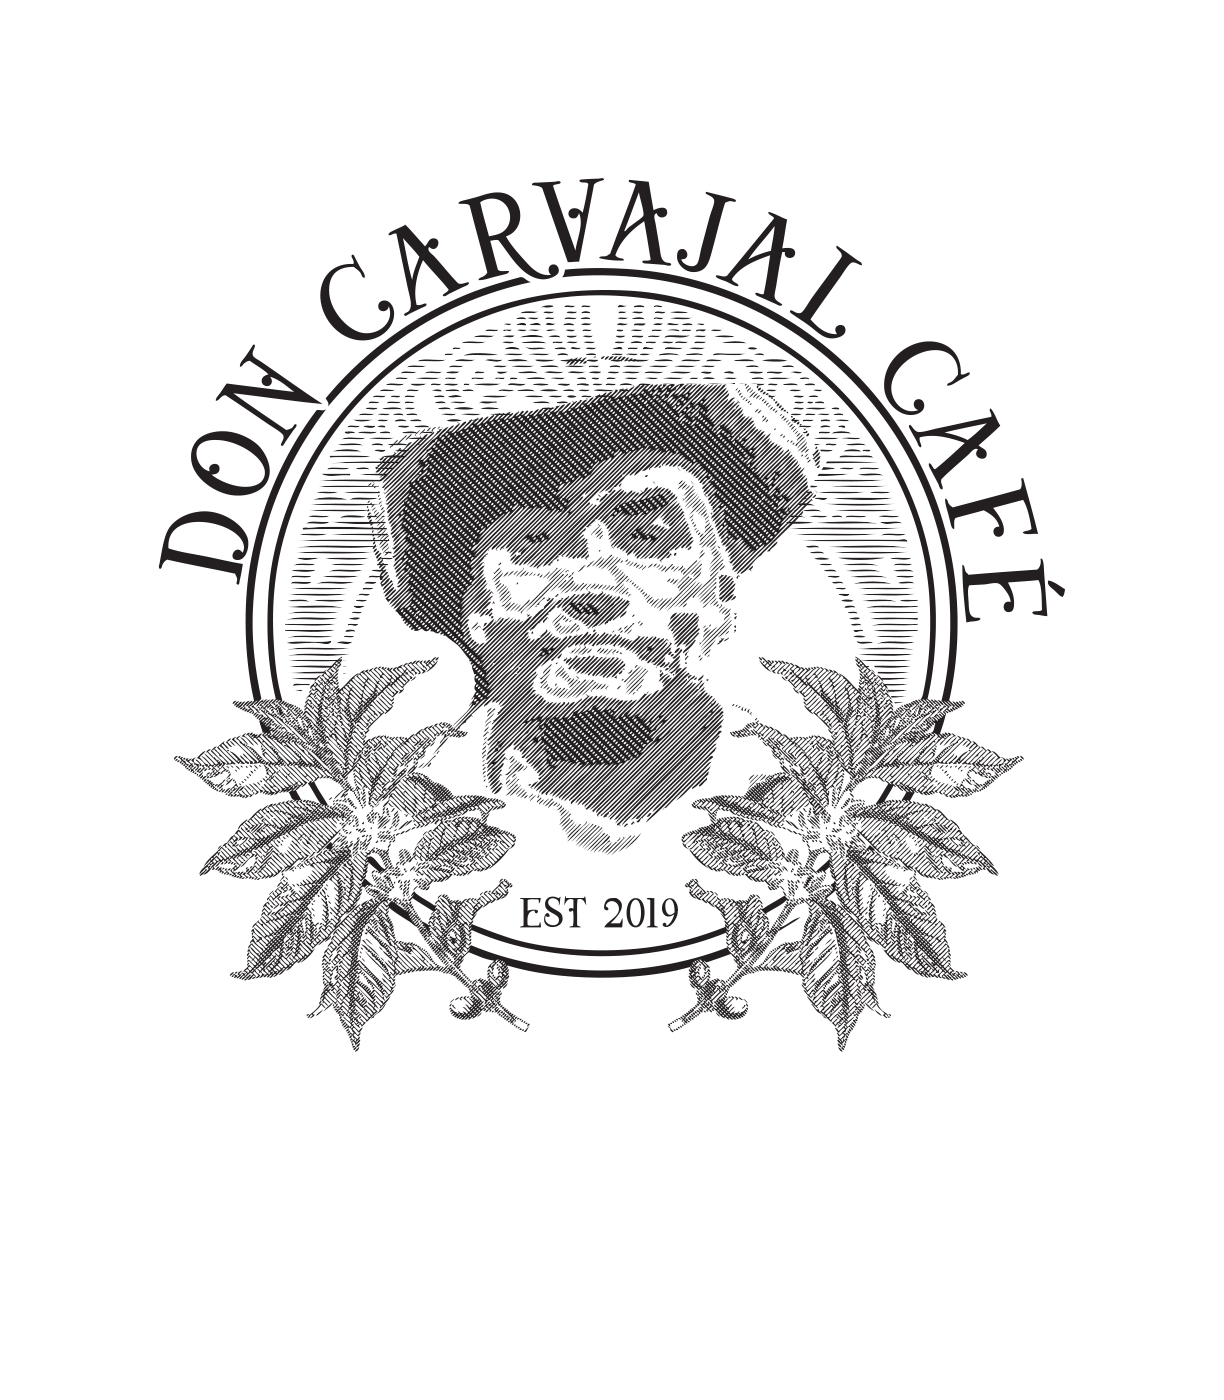 Don Carvajal Café